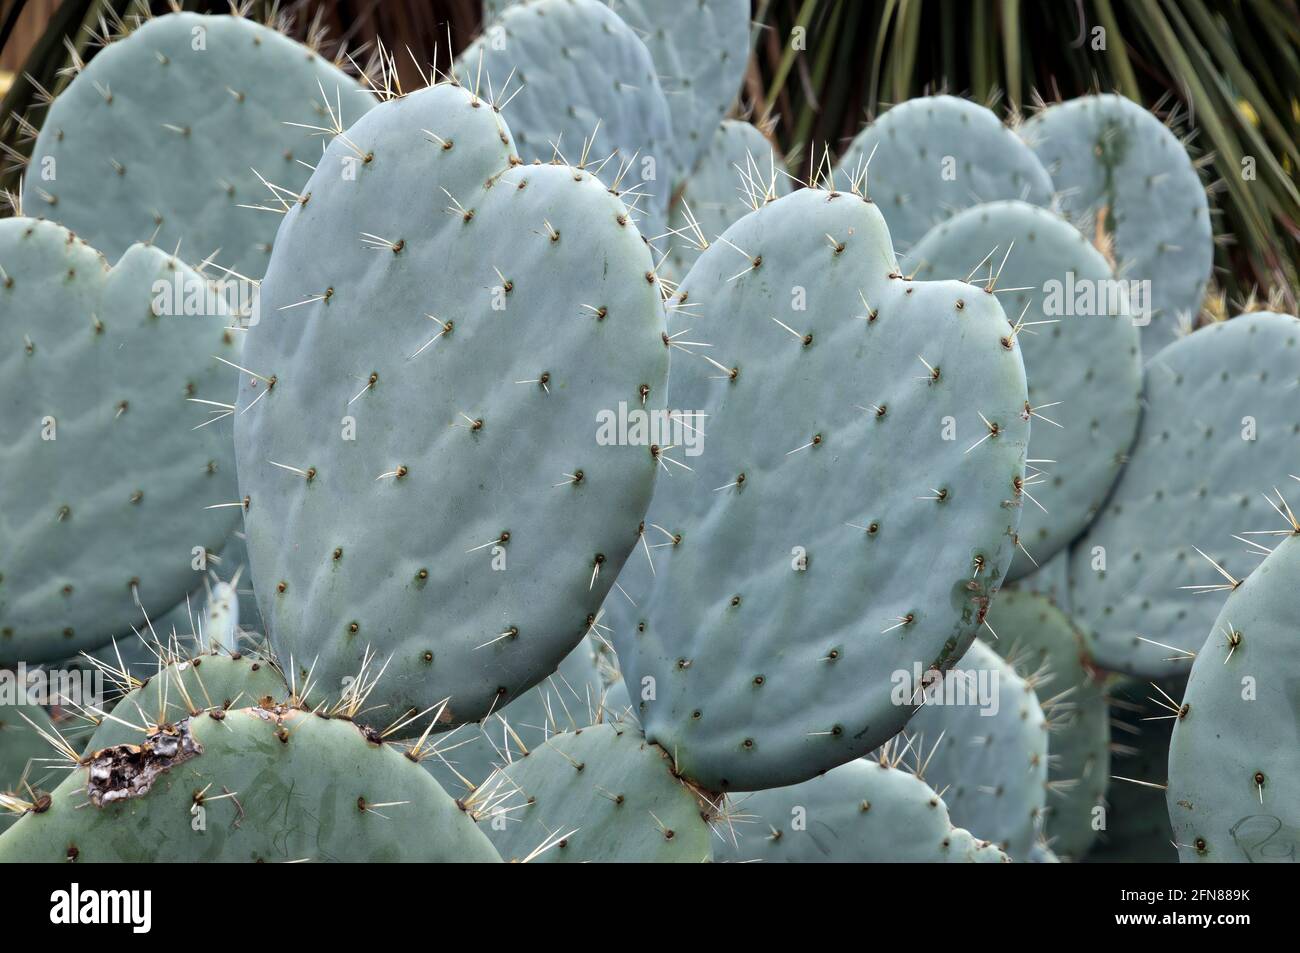 Sydney Australia, Opuntia Robusta pale di cactus con lunghe spine taglienti Foto Stock